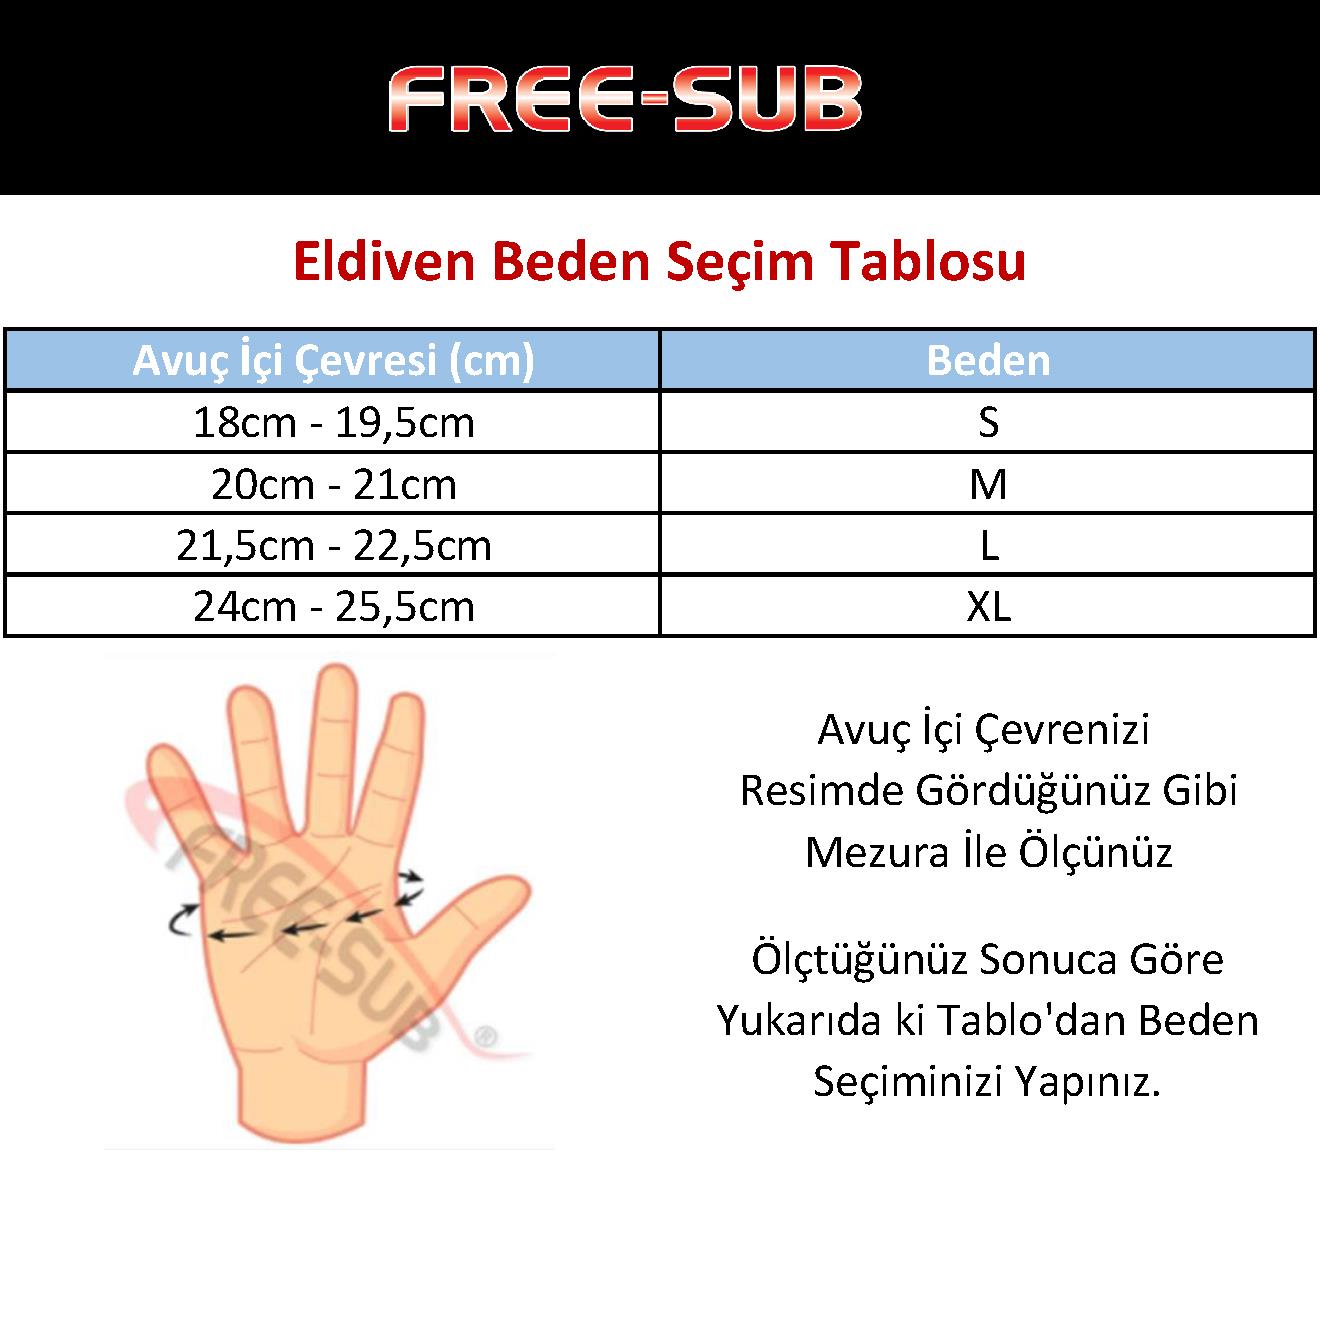 Free-Sub Diver Pro 3mm Saros Neopren Dalış Eldiveni - Dalış Elbisesi Market